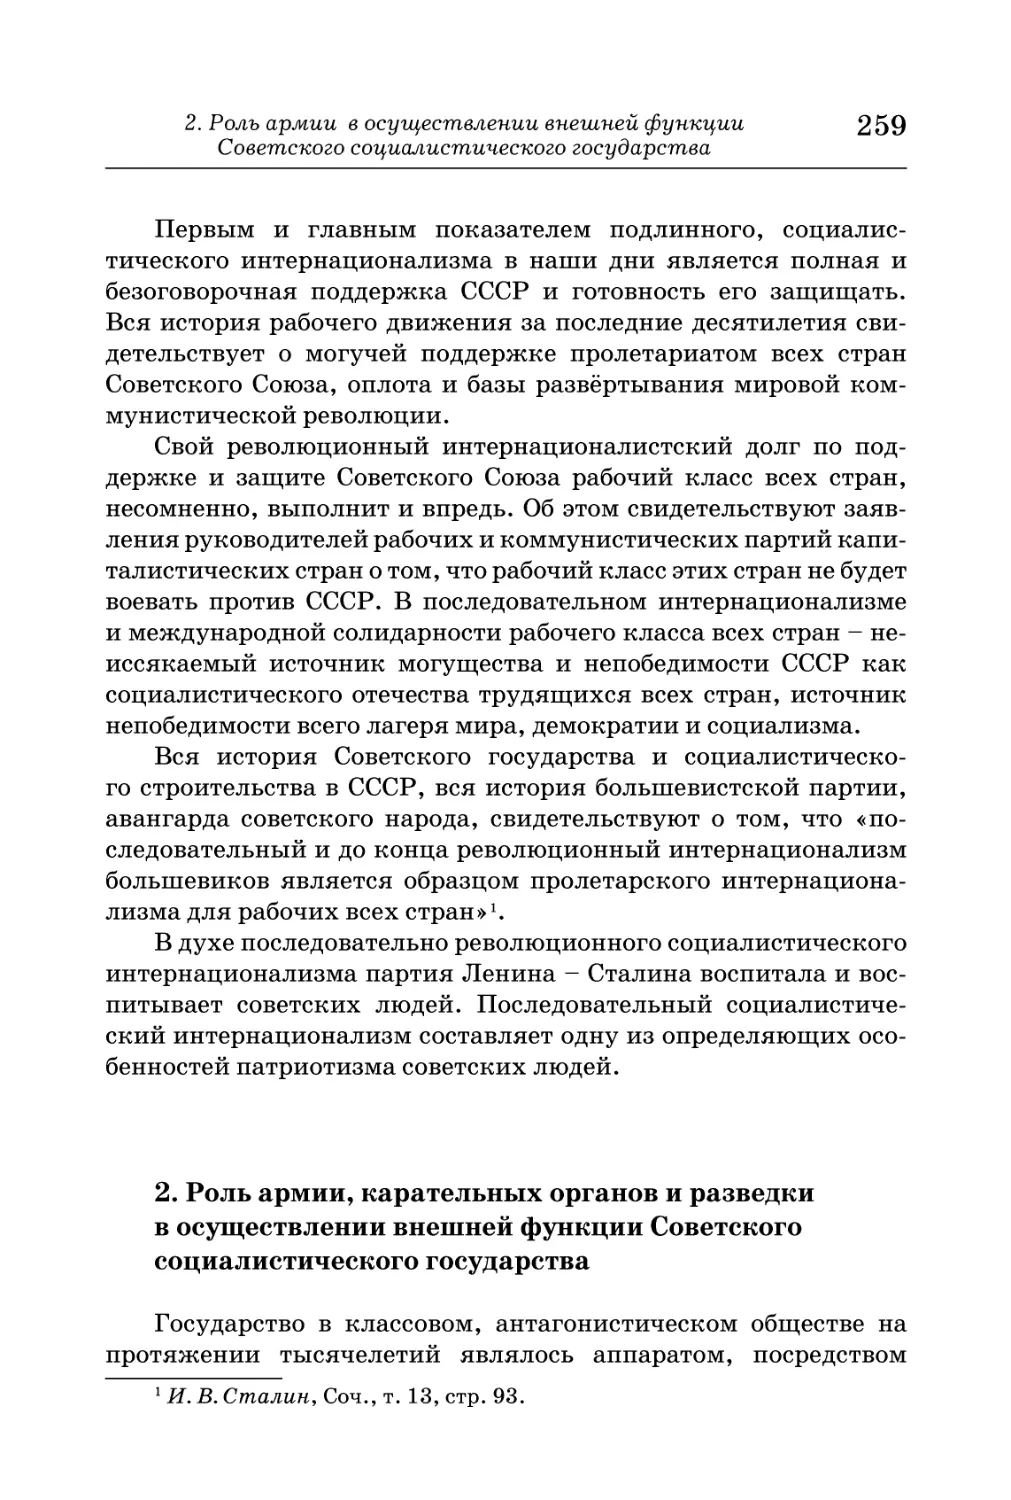 2.  Роль  армии,  карательных  органов  и  разведки  в  осуществлении  внешней  функции  Советского  социалистического  государства